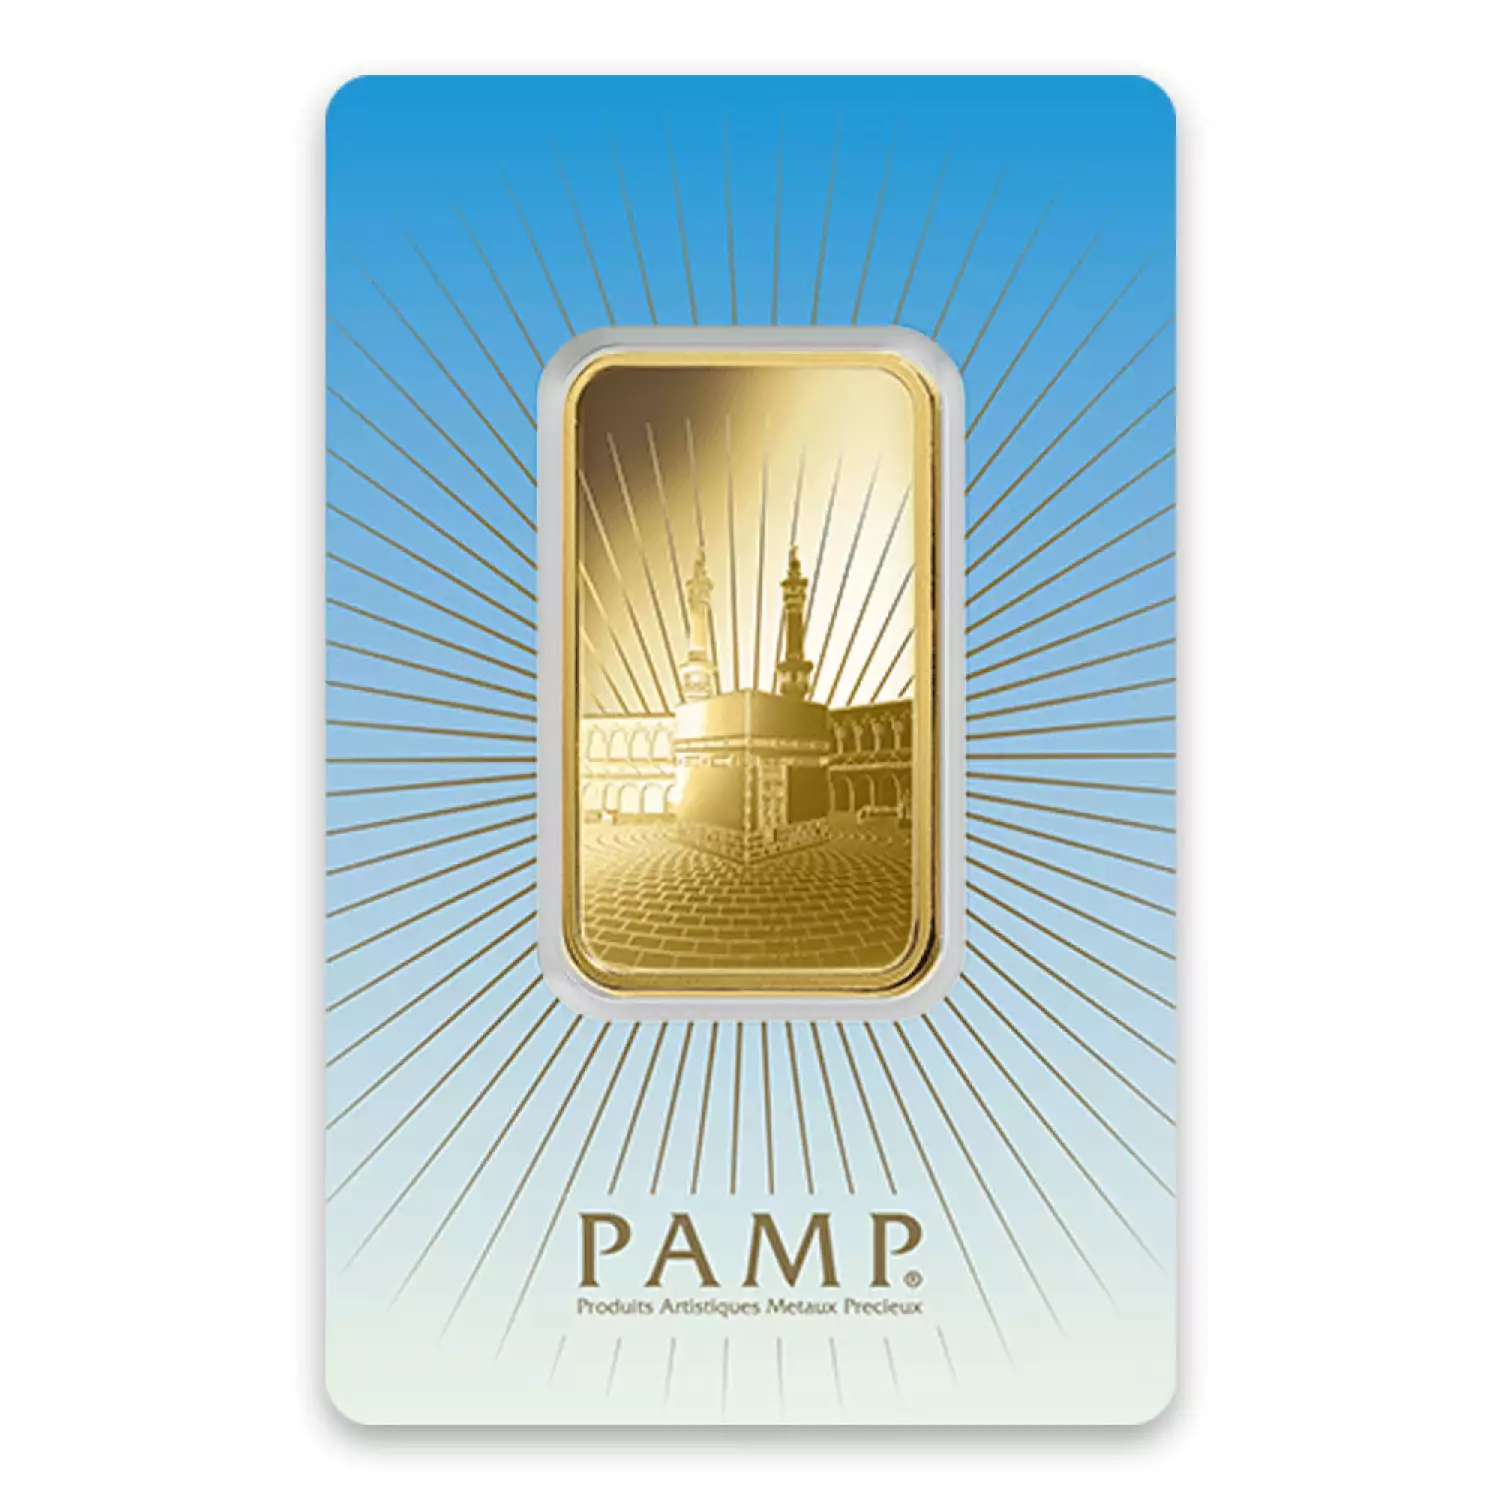 1 oz Ka`Bah. Mecca Gold Bar | PAMP Suisse Gold Bars - Hertel's Coins Inc.